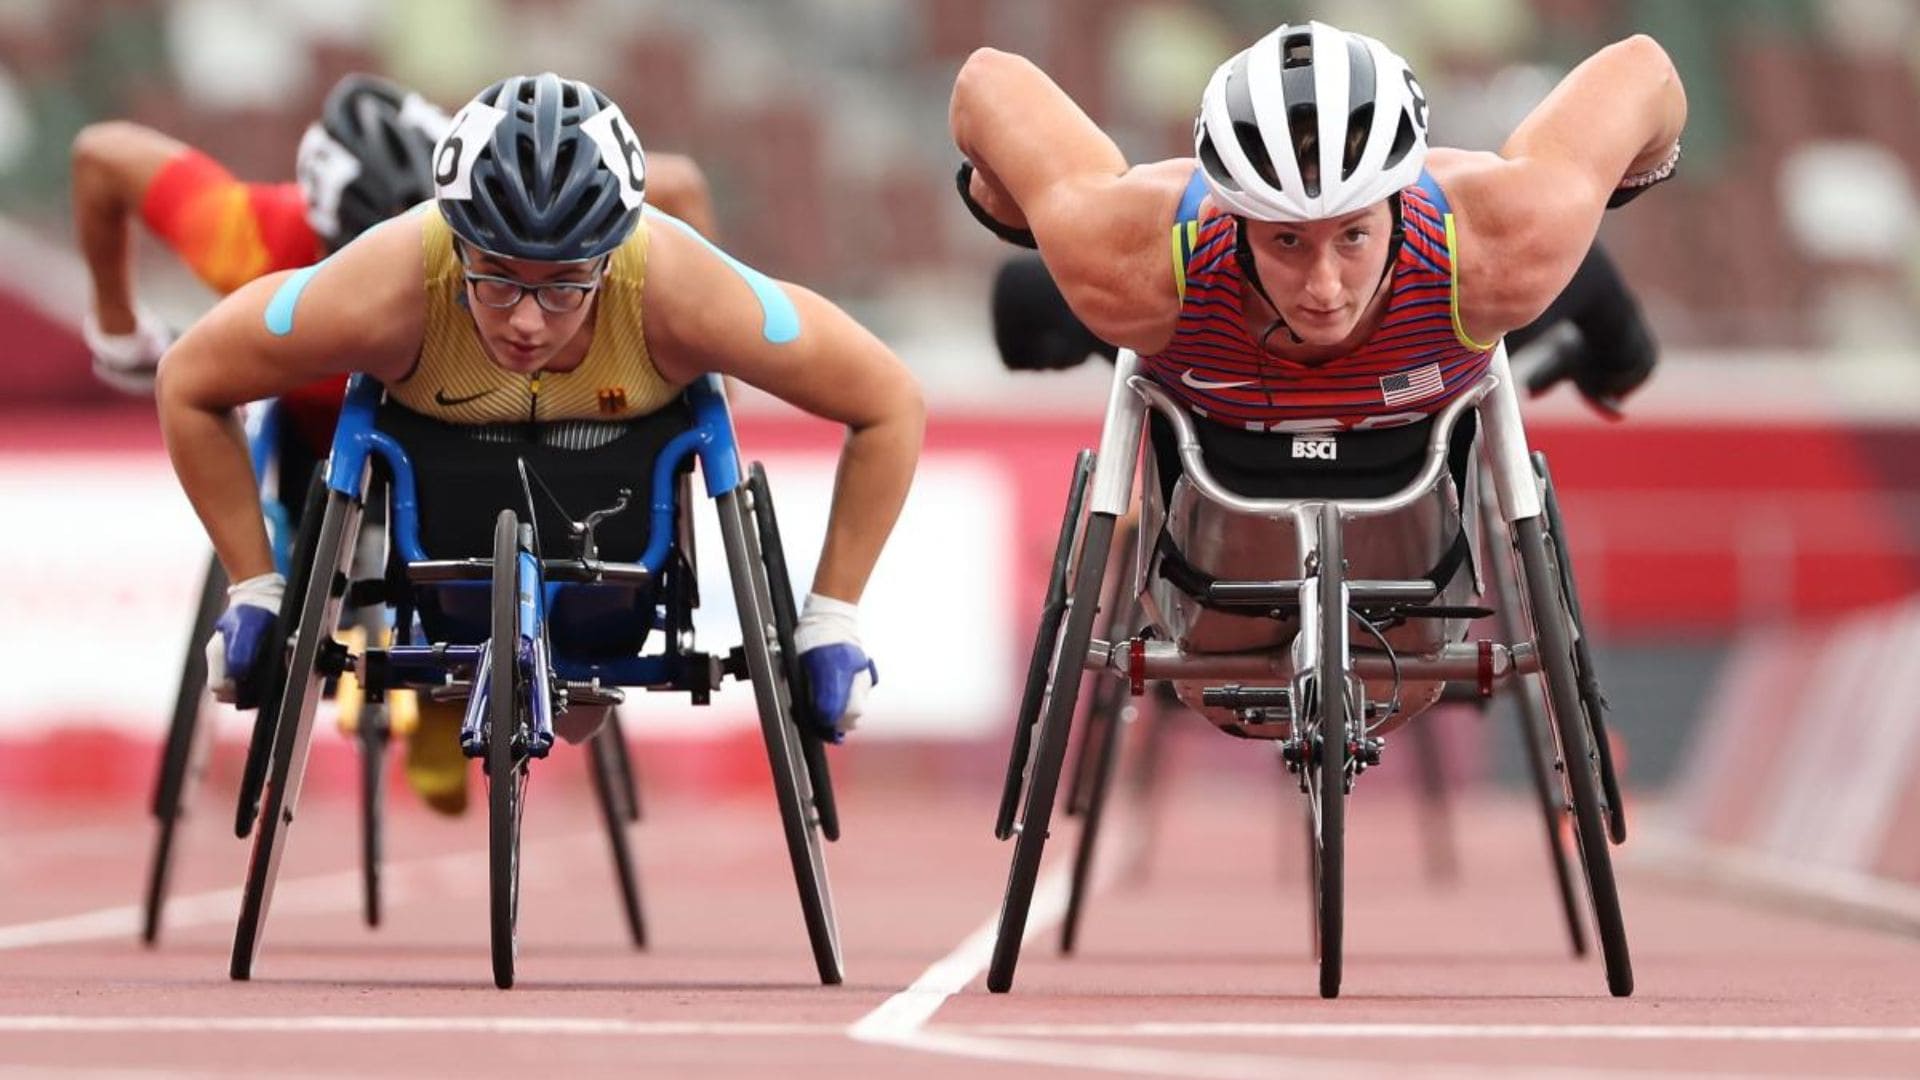 Los Juegos Paralímpicos, la mayor cita deportiva para las personas con discapacidad